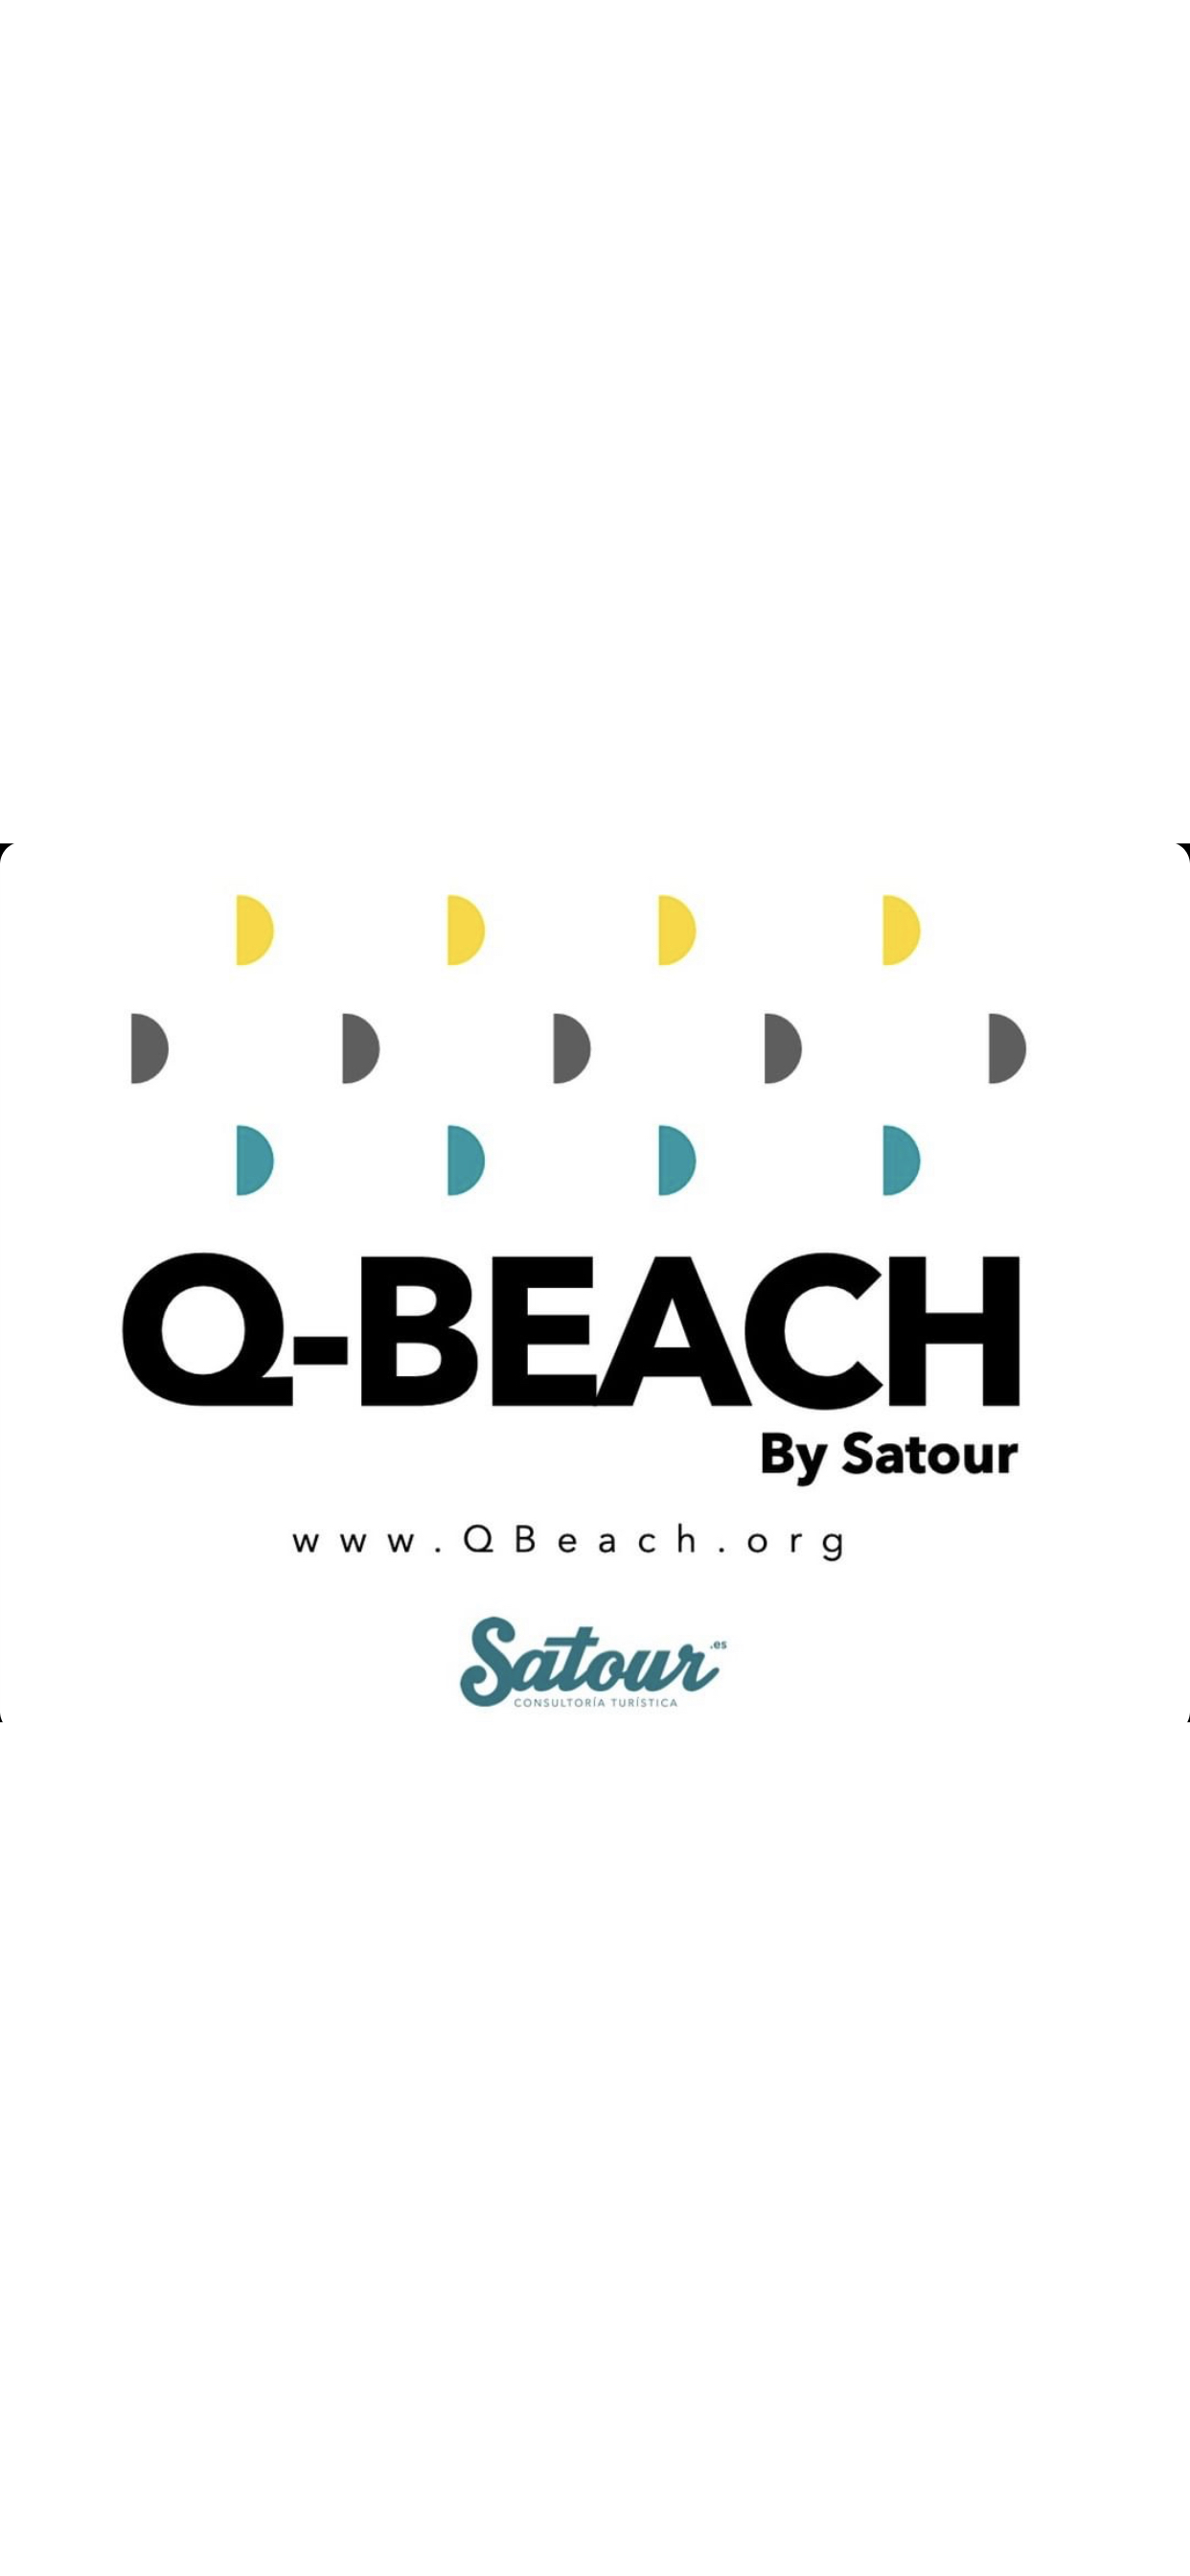 Q-Beach_Management_by_Satour